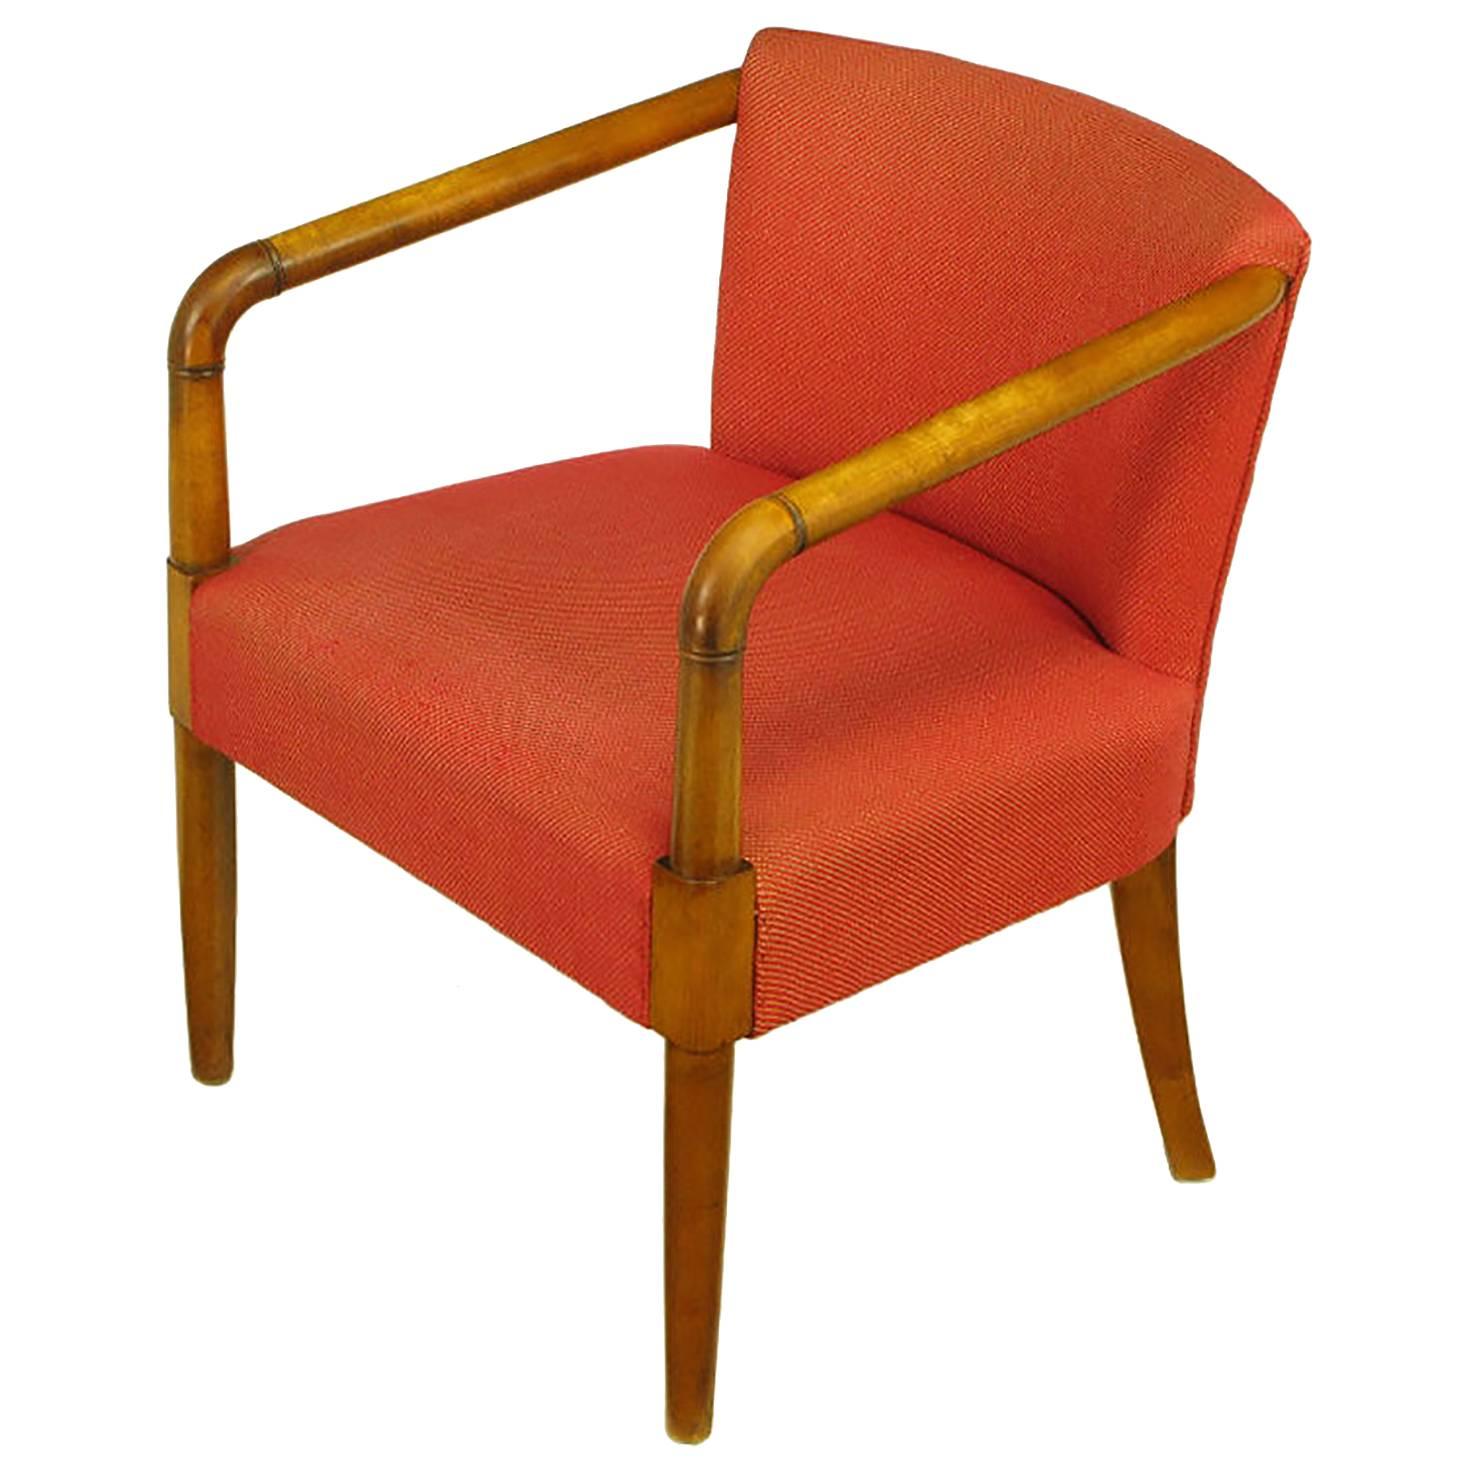 Mahogany & Crimson Upholstered Slope-Arm Desk Chair